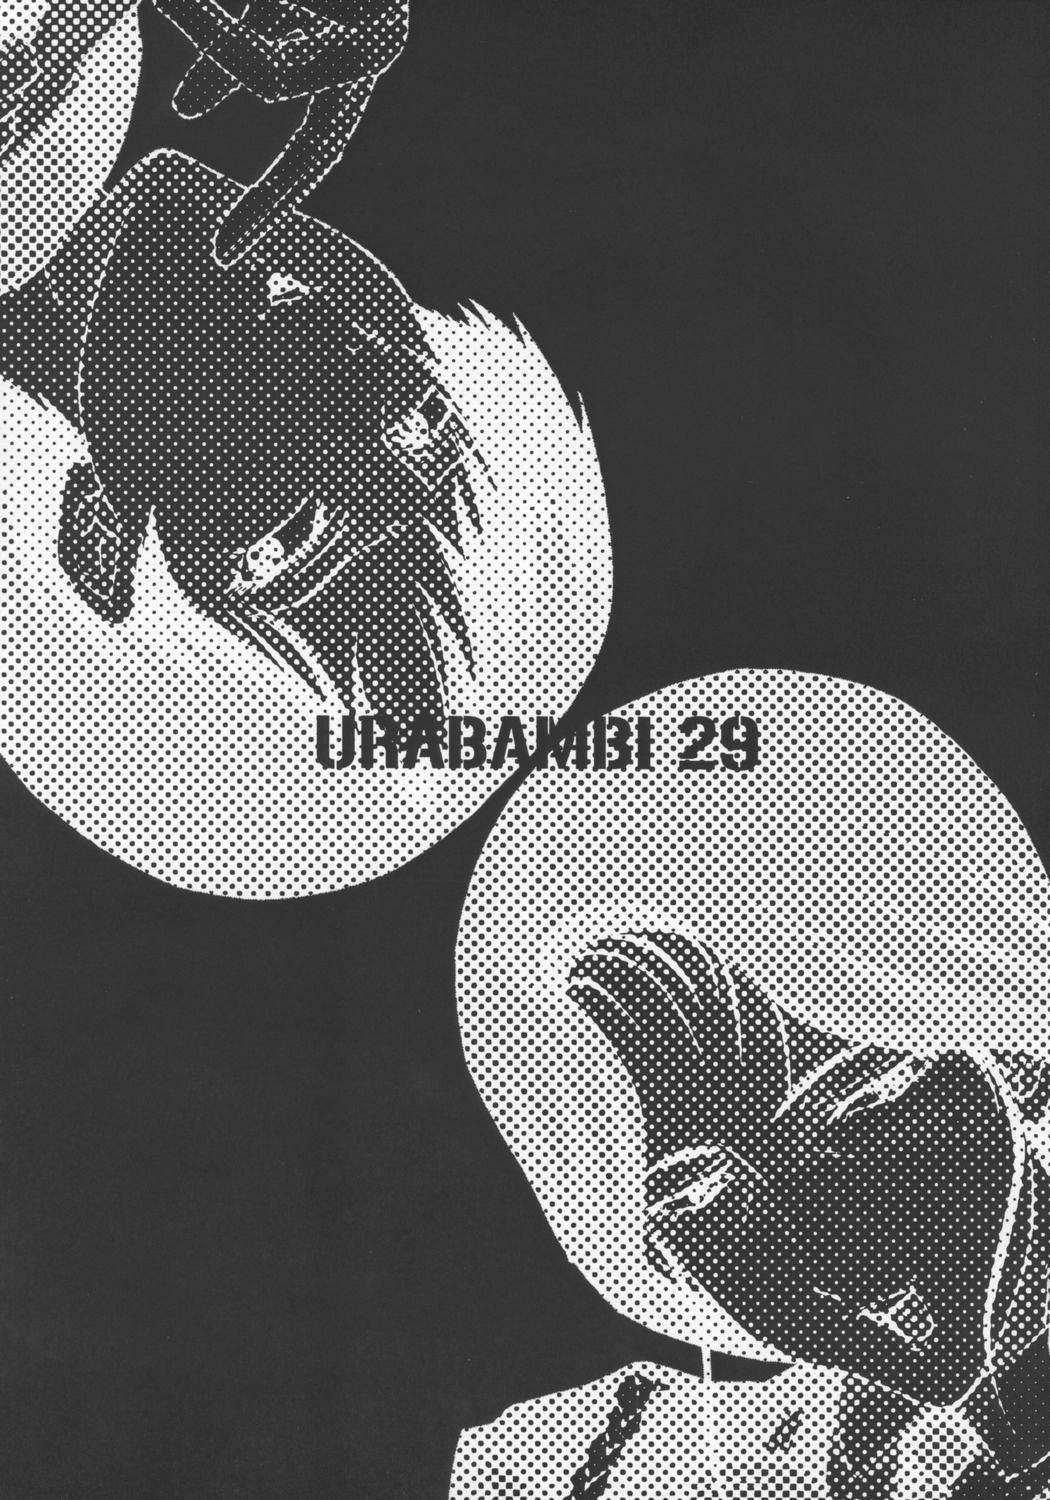 Urabambi Vol. 29 - Condition Green 1